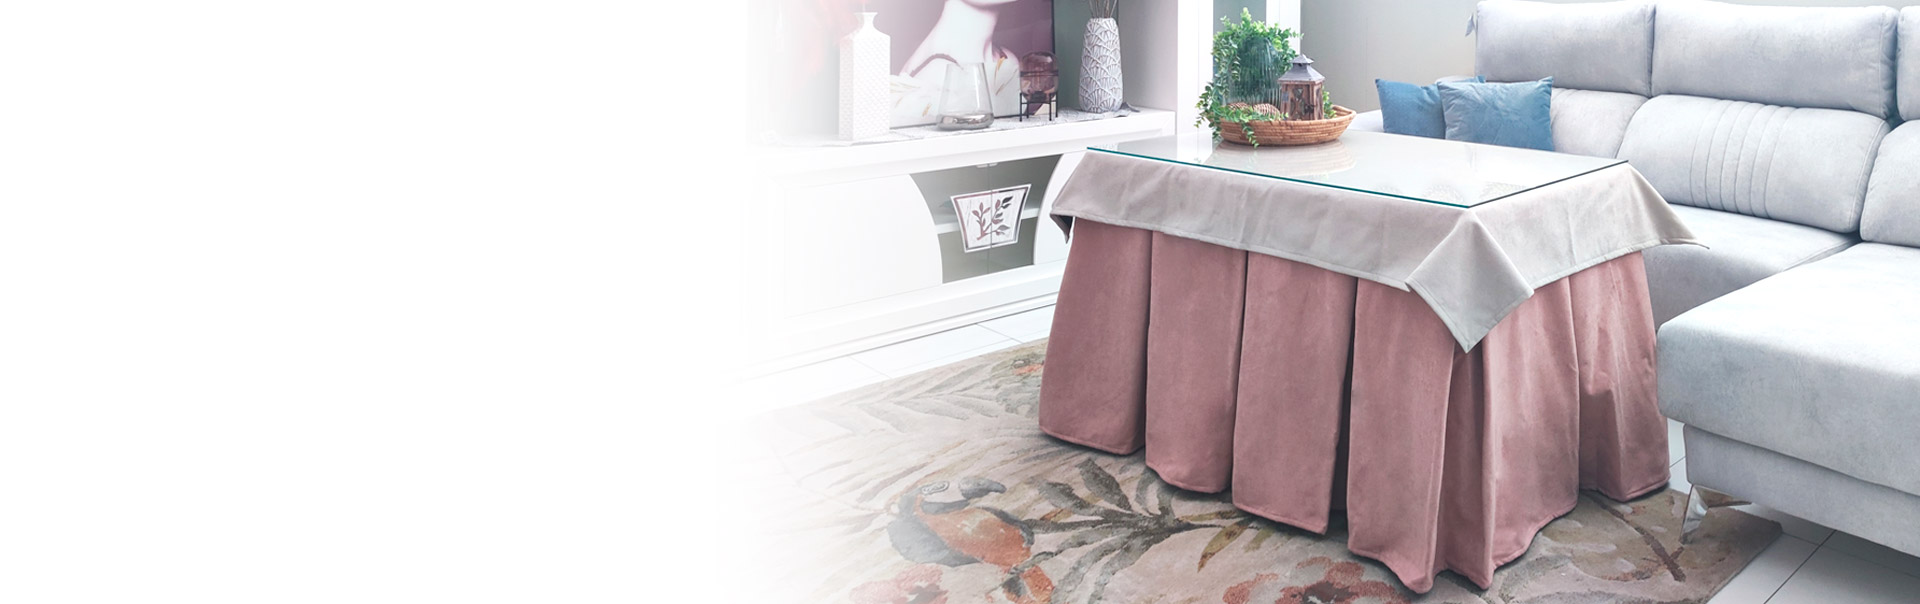 Mesa camilla barata: cristal, tapete, ropa de camilla y hueco para brasero.